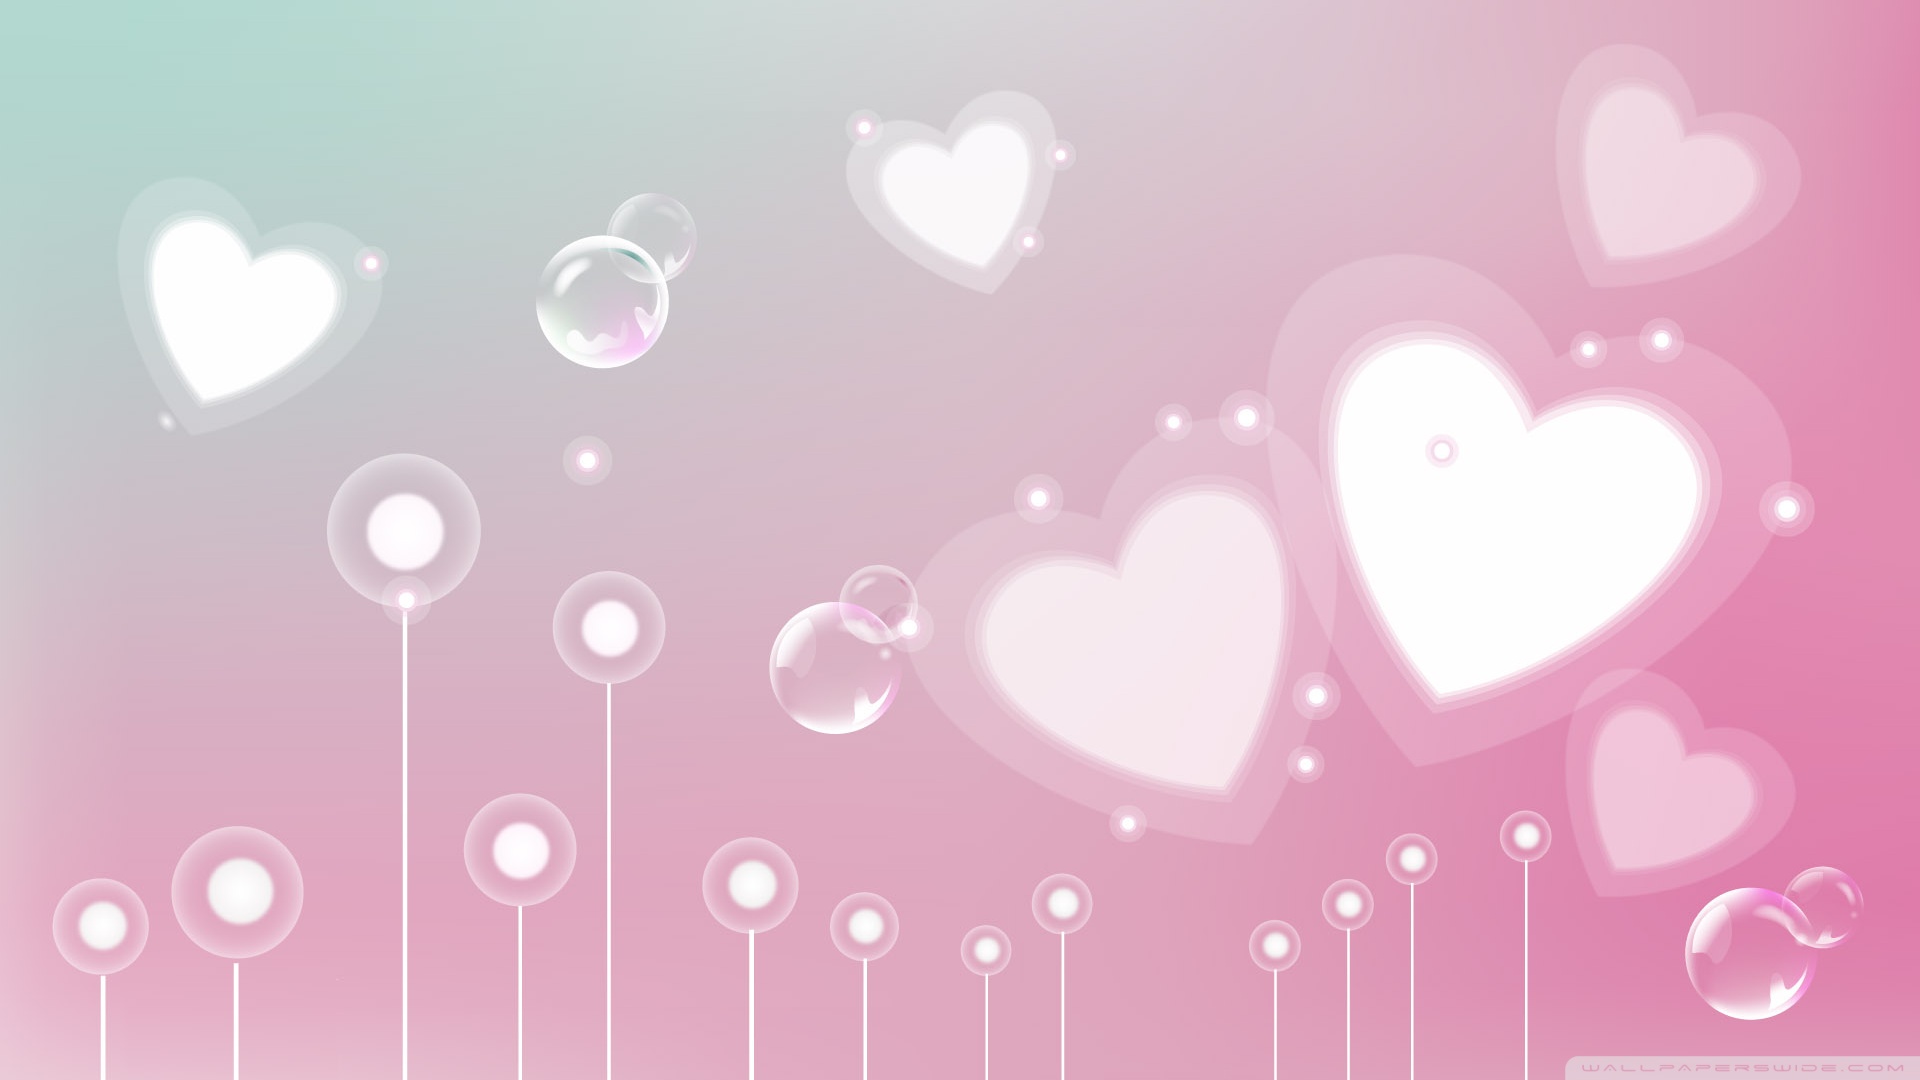 Pastel Valentine Hearts 4K HD Desktop Wallpaper for 4K Ultra HD